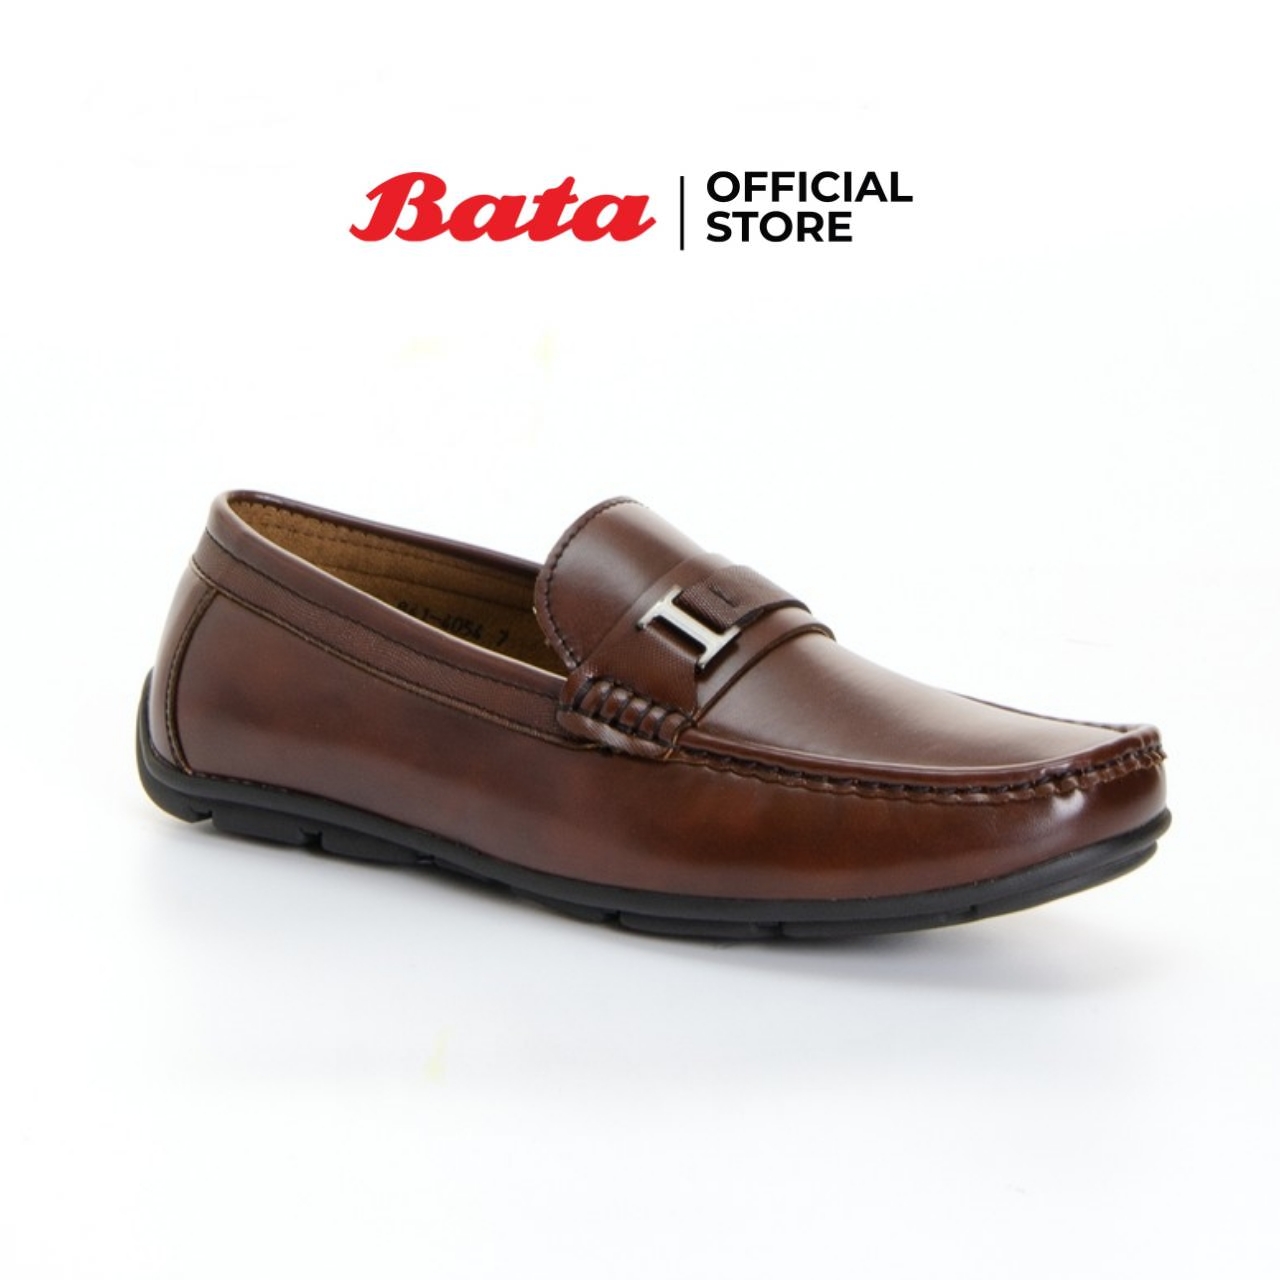 Bata MEN'S CASUAL MOCCASIN รองเท้าคัทชู รองเท้าลำลองผู้ชาย แบบสวม สีน้ำตาล รหัส 8414054 Mencasual Fashion